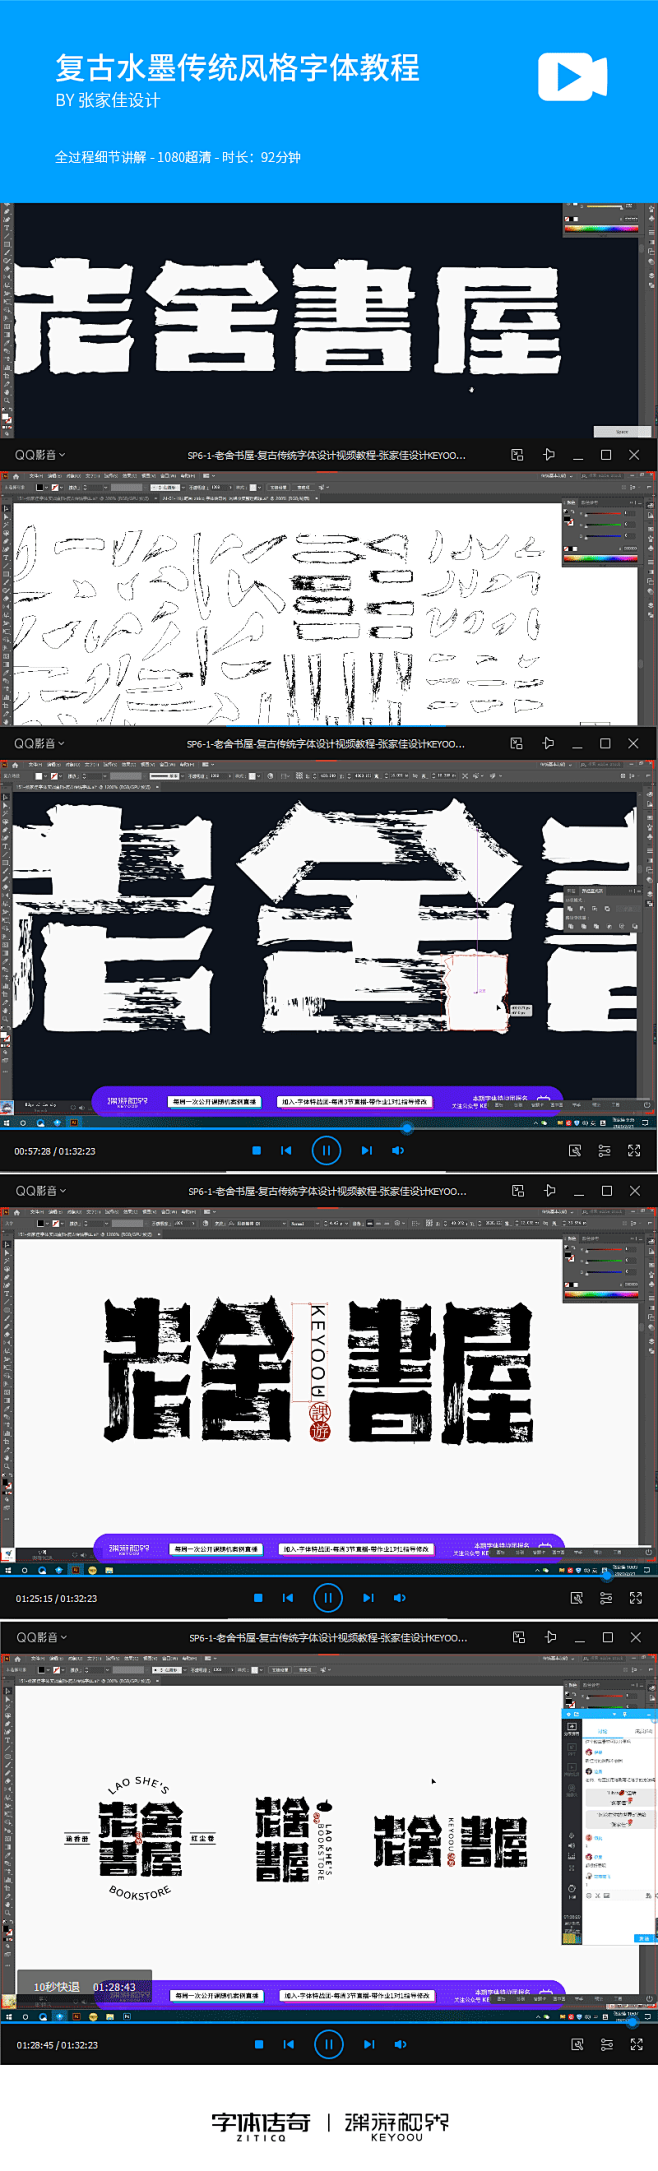 复古水墨传统风格字体设计视频教程-带AI...